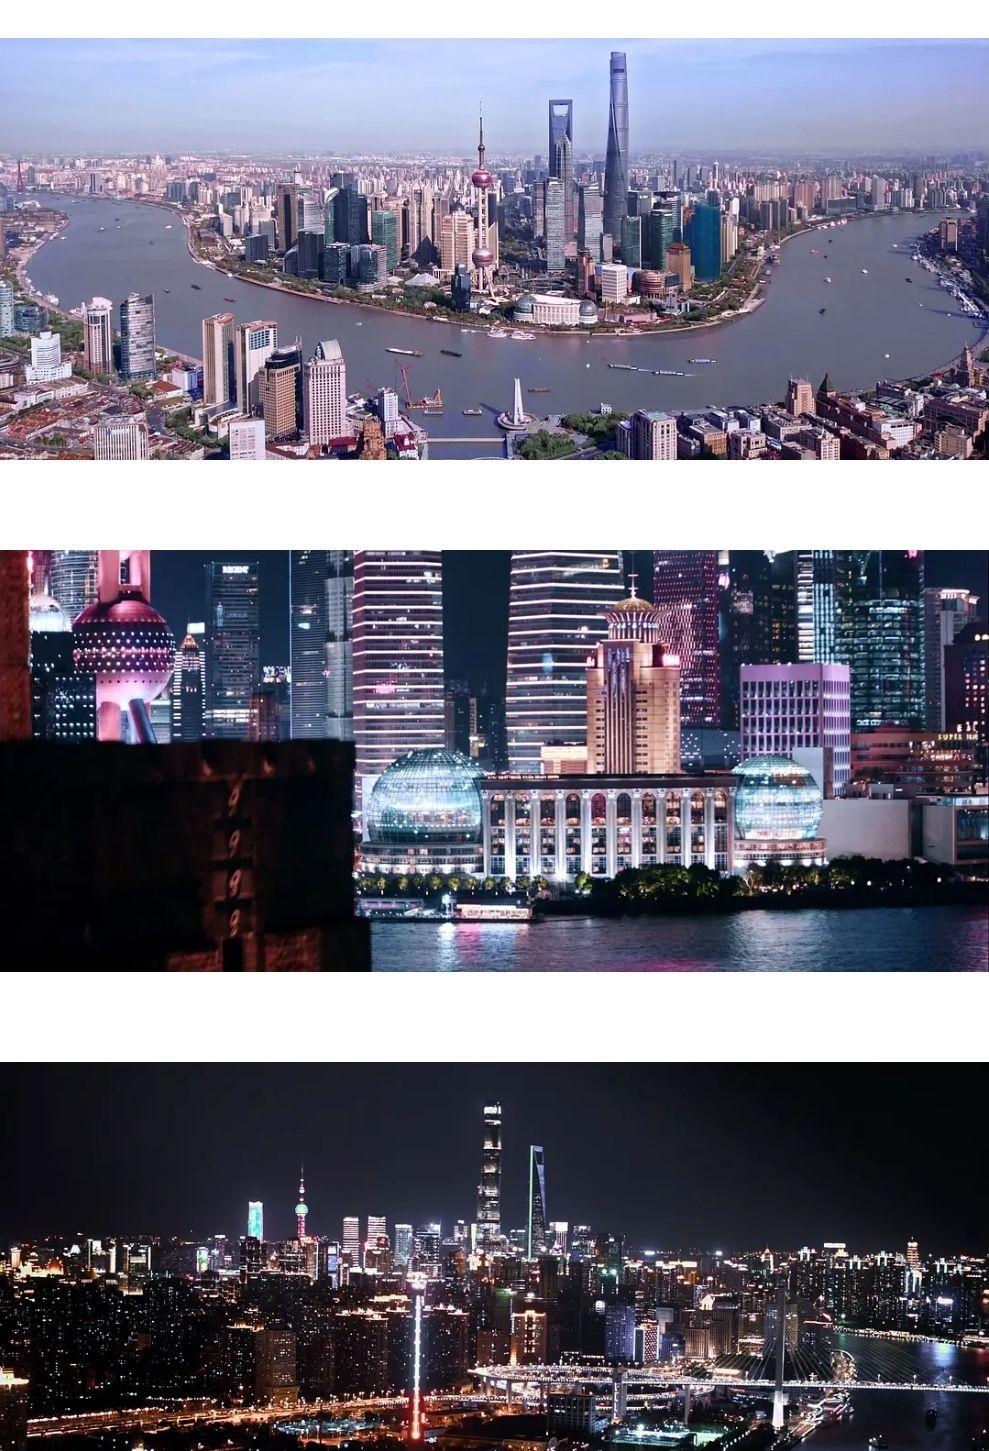 这剧还用大量的空镜镜头来展现了上海的地铁,高楼大厦,外滩等,把上海